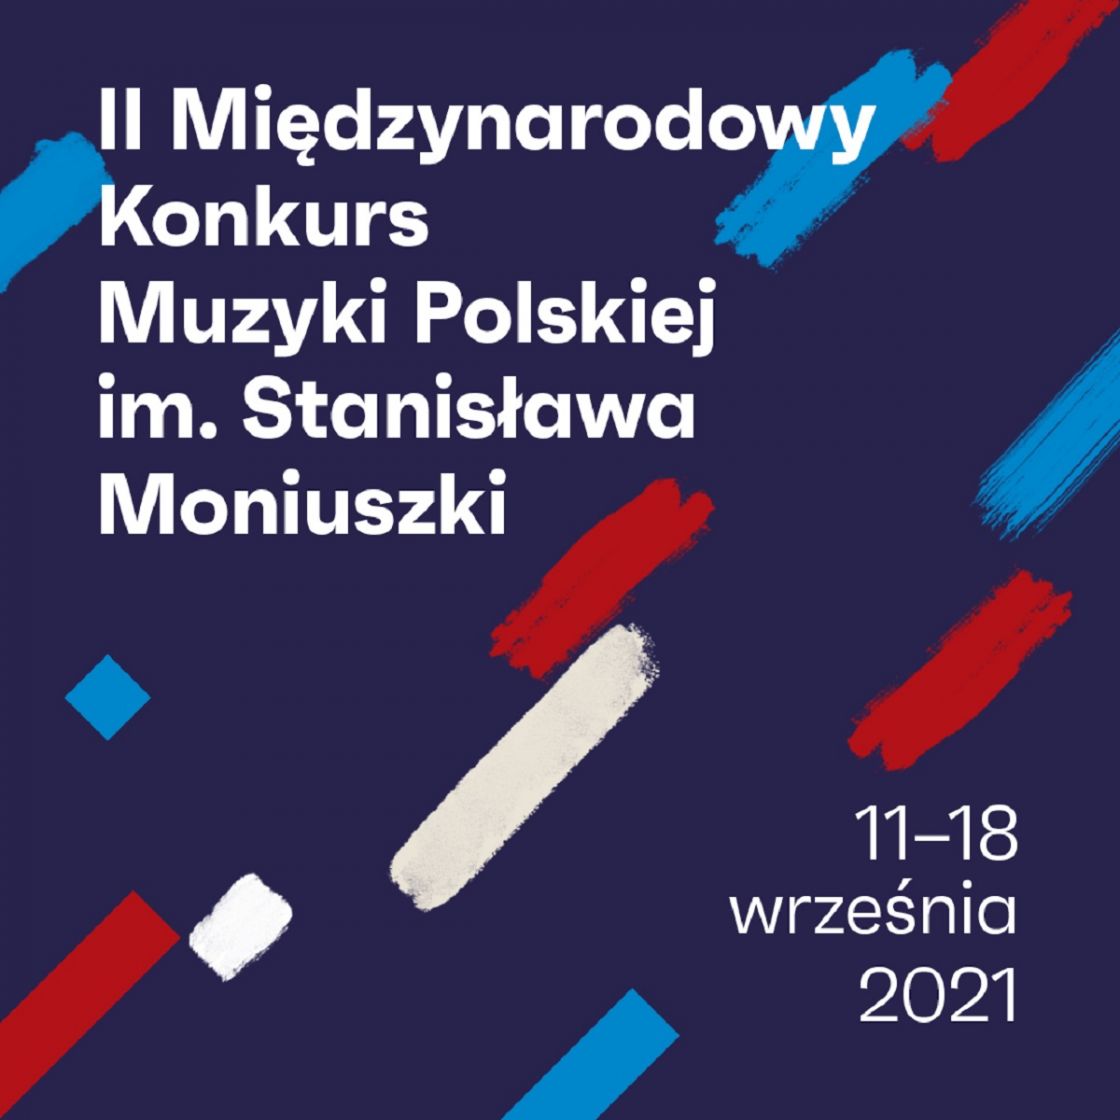 KONCERT INAUGURACYJNY  -  II Międzynarodowy Konkurs Muzyki Polskiej im. Stanisława Moniuszki w Rzeszowie